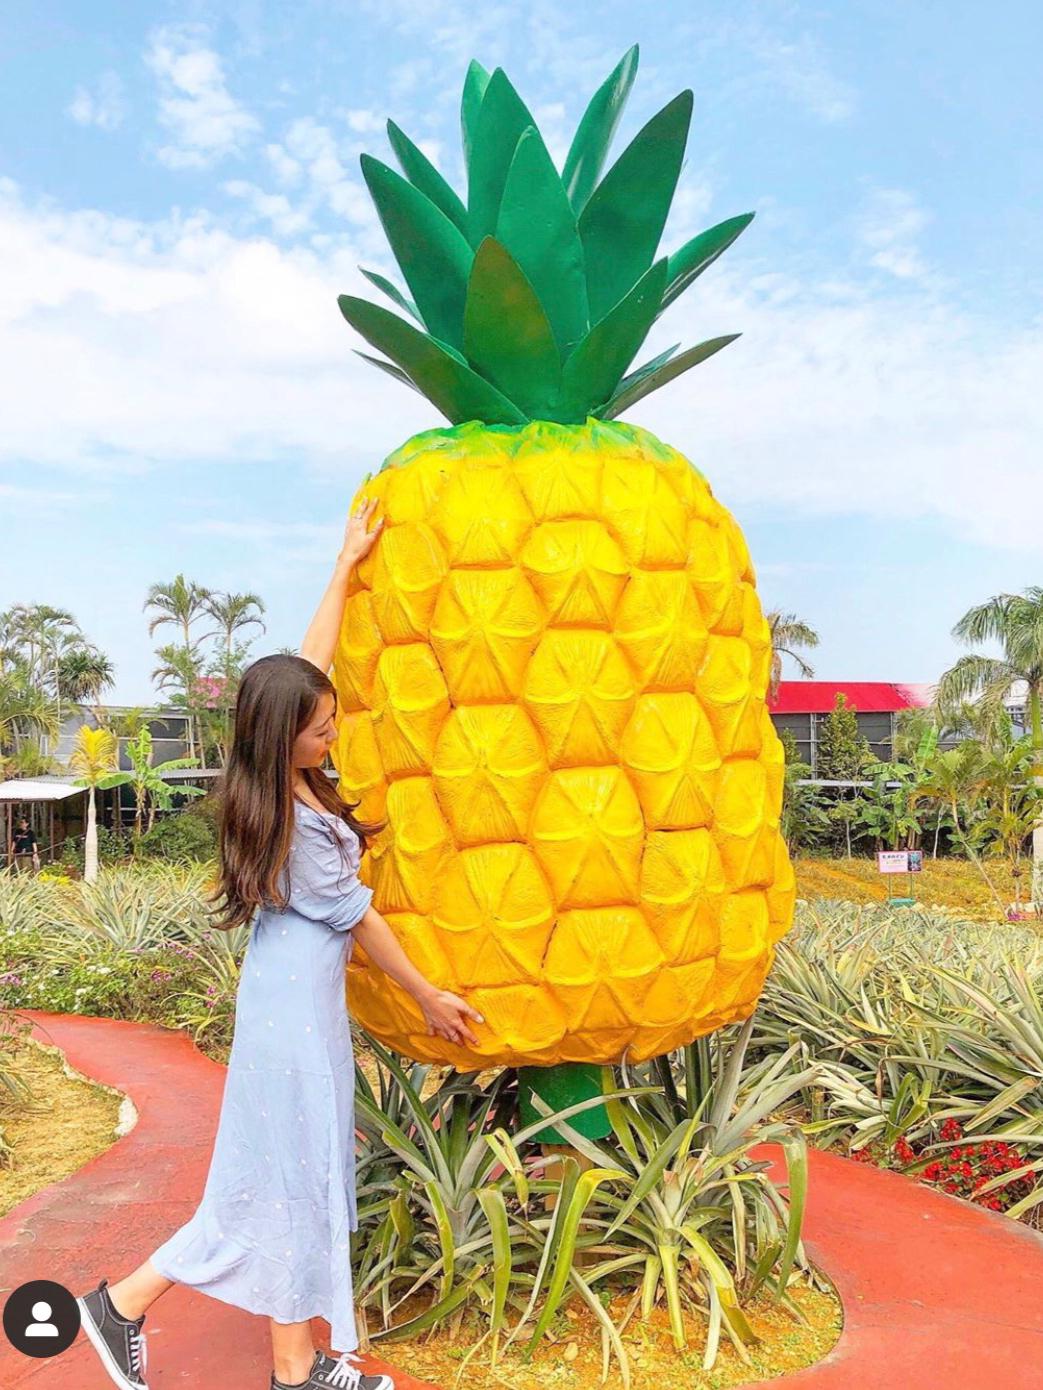 沖縄 雨でも楽しめるパイナップルの楽園 ナゴパイナップルパーク 74 Mariが投稿した記事 Sharee